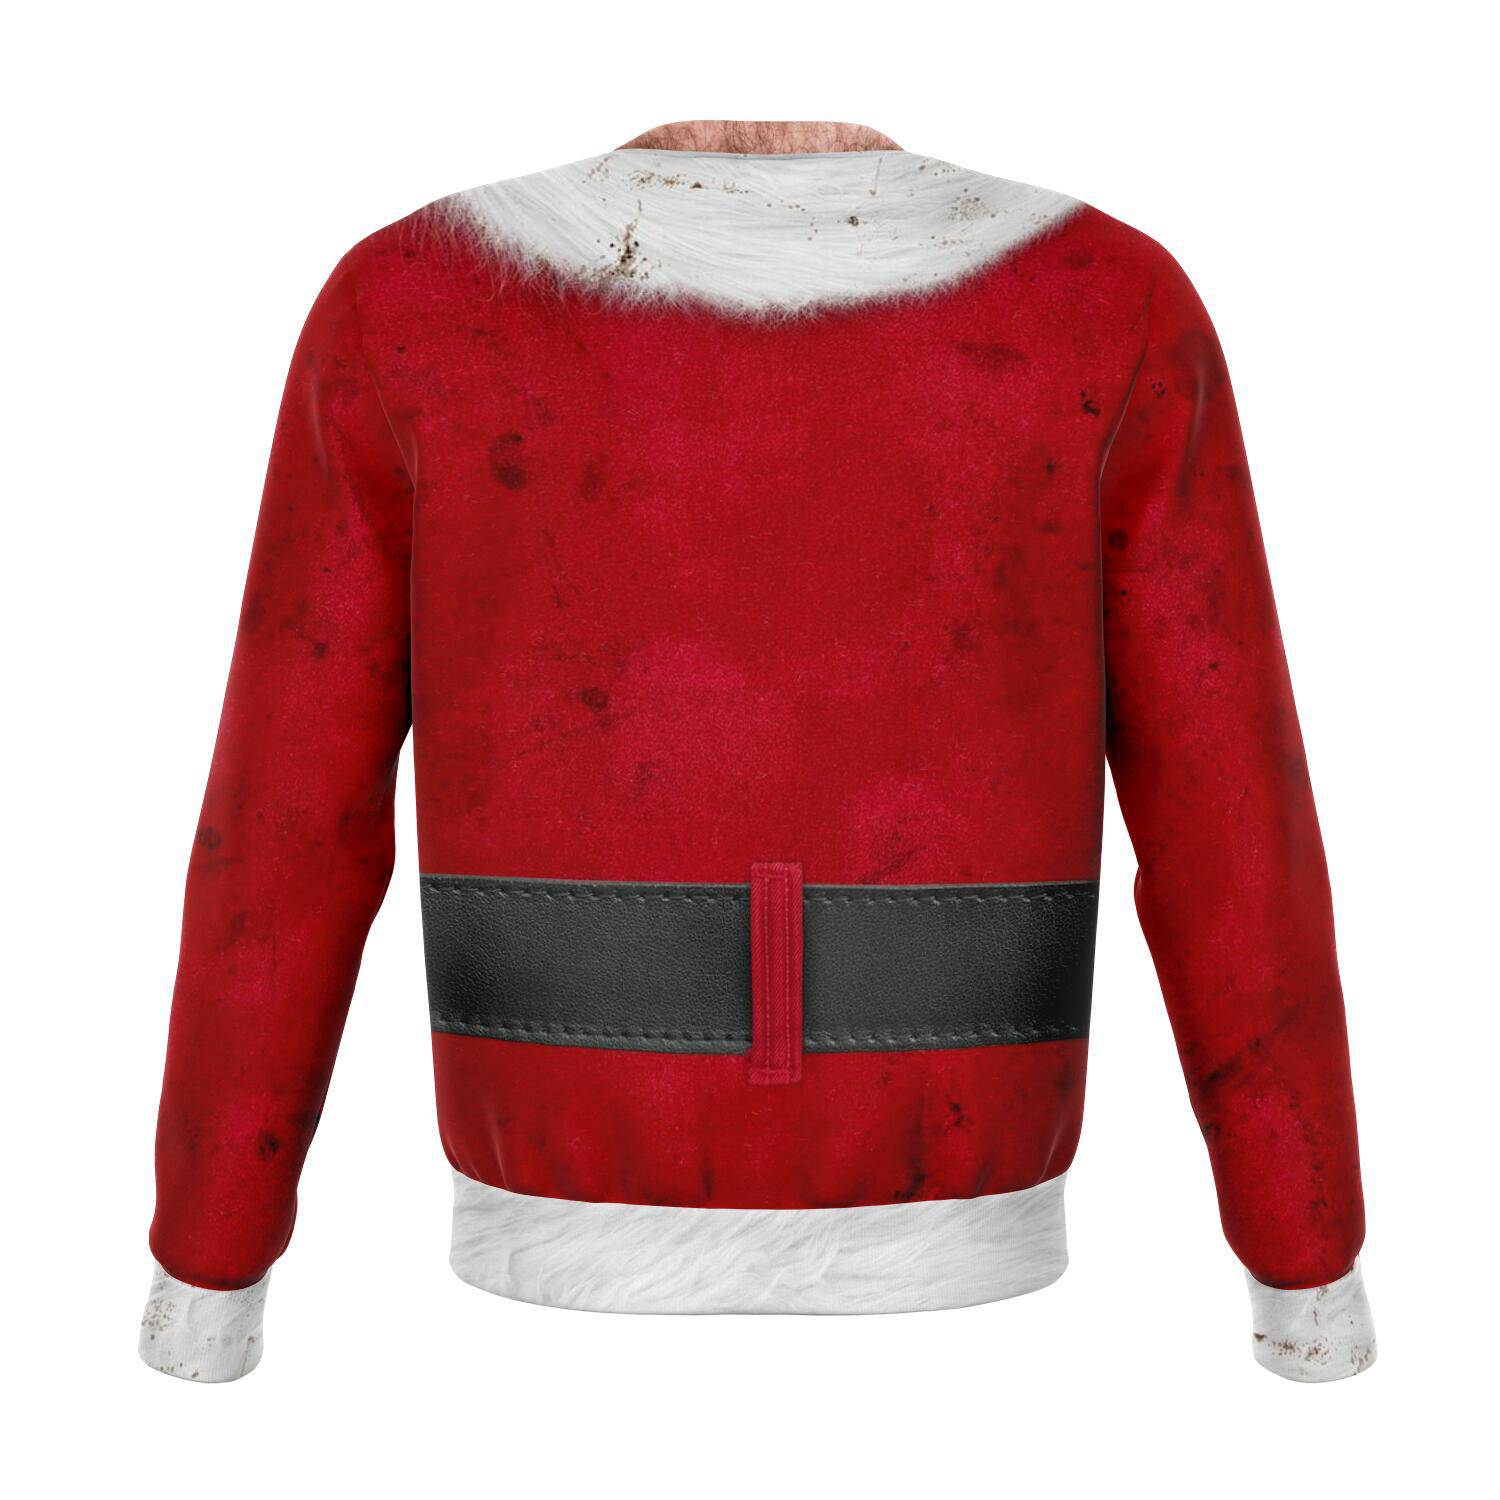 Bad Santa Ugly Christmas Sweater Order By December 5 - Powderaddicts